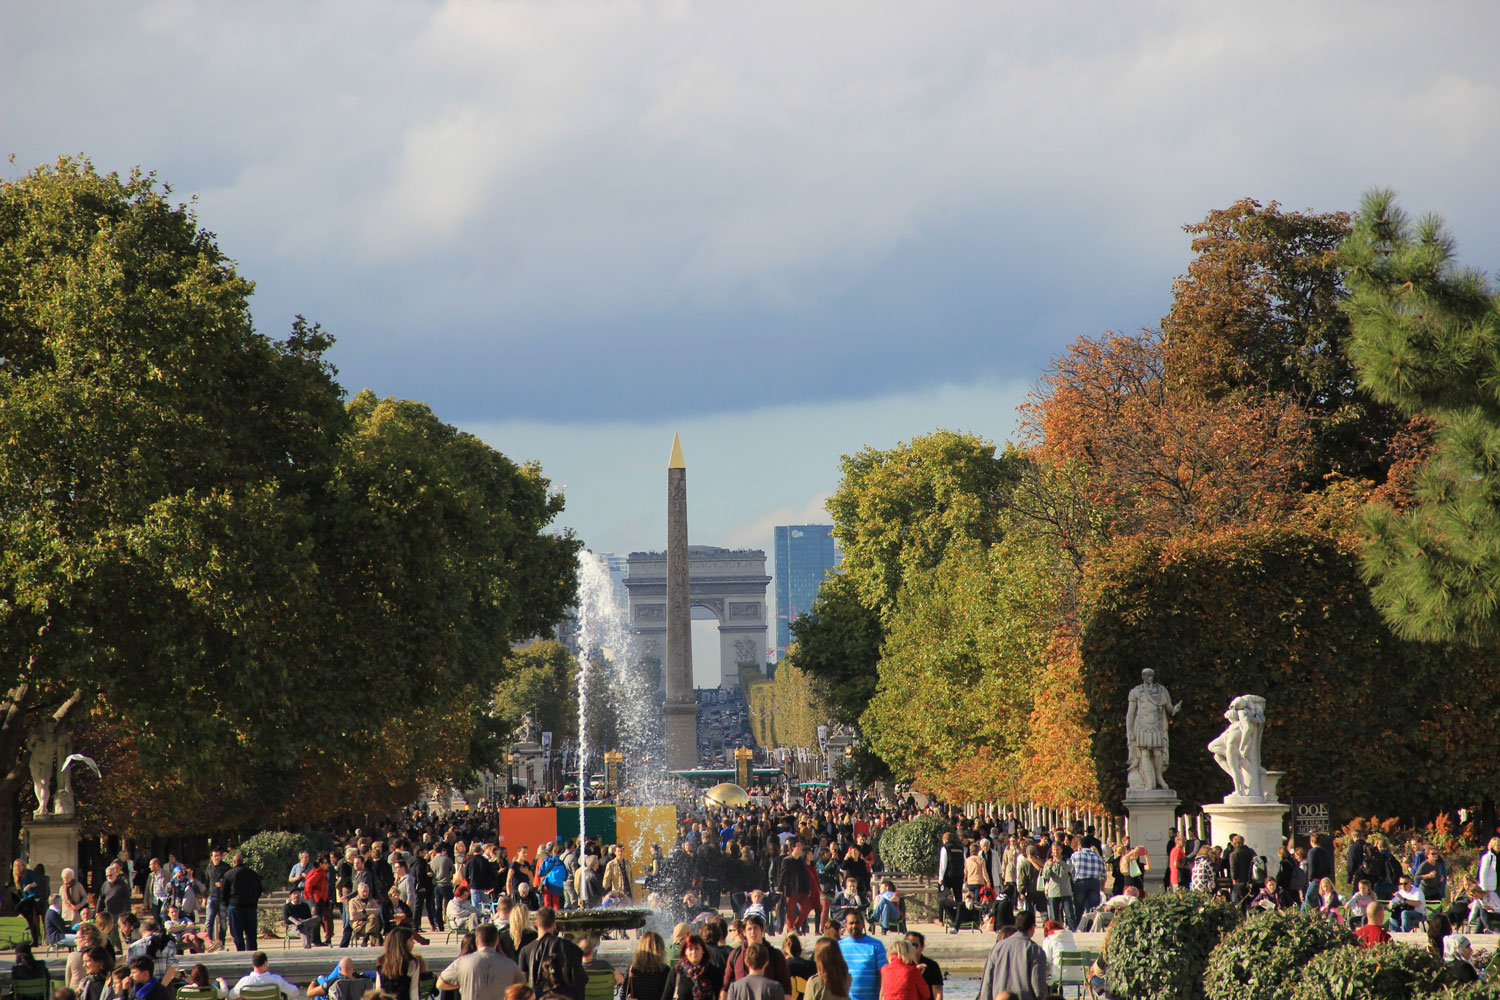 O que fazer em Paris: roteiro de 4 dias em Paris com pontos turísticos e lugares diferentes